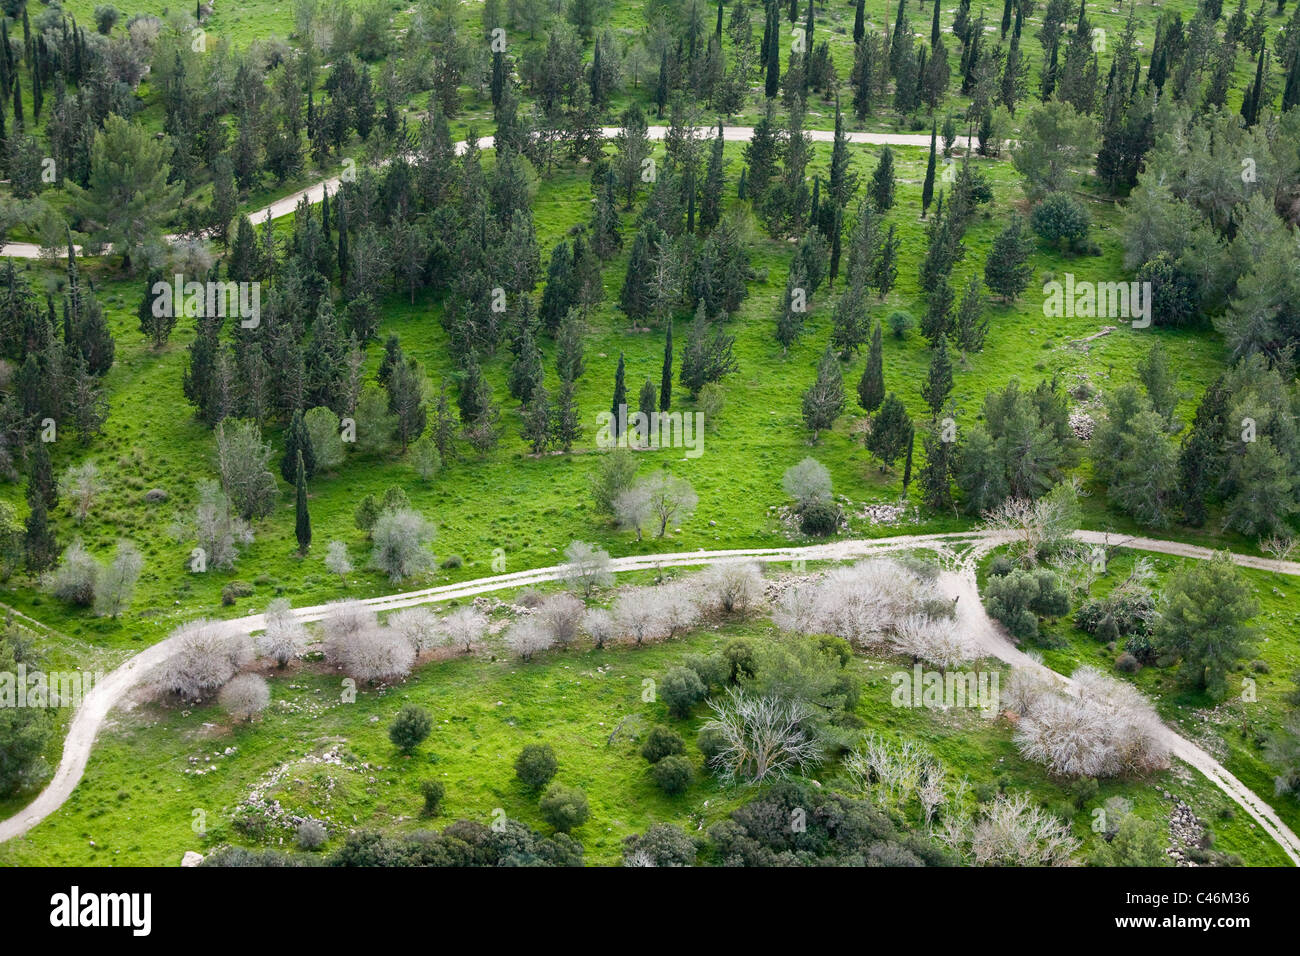 Fotografía aérea del Bosque Ben Shemen en las montañas de Jerusalén Foto de stock